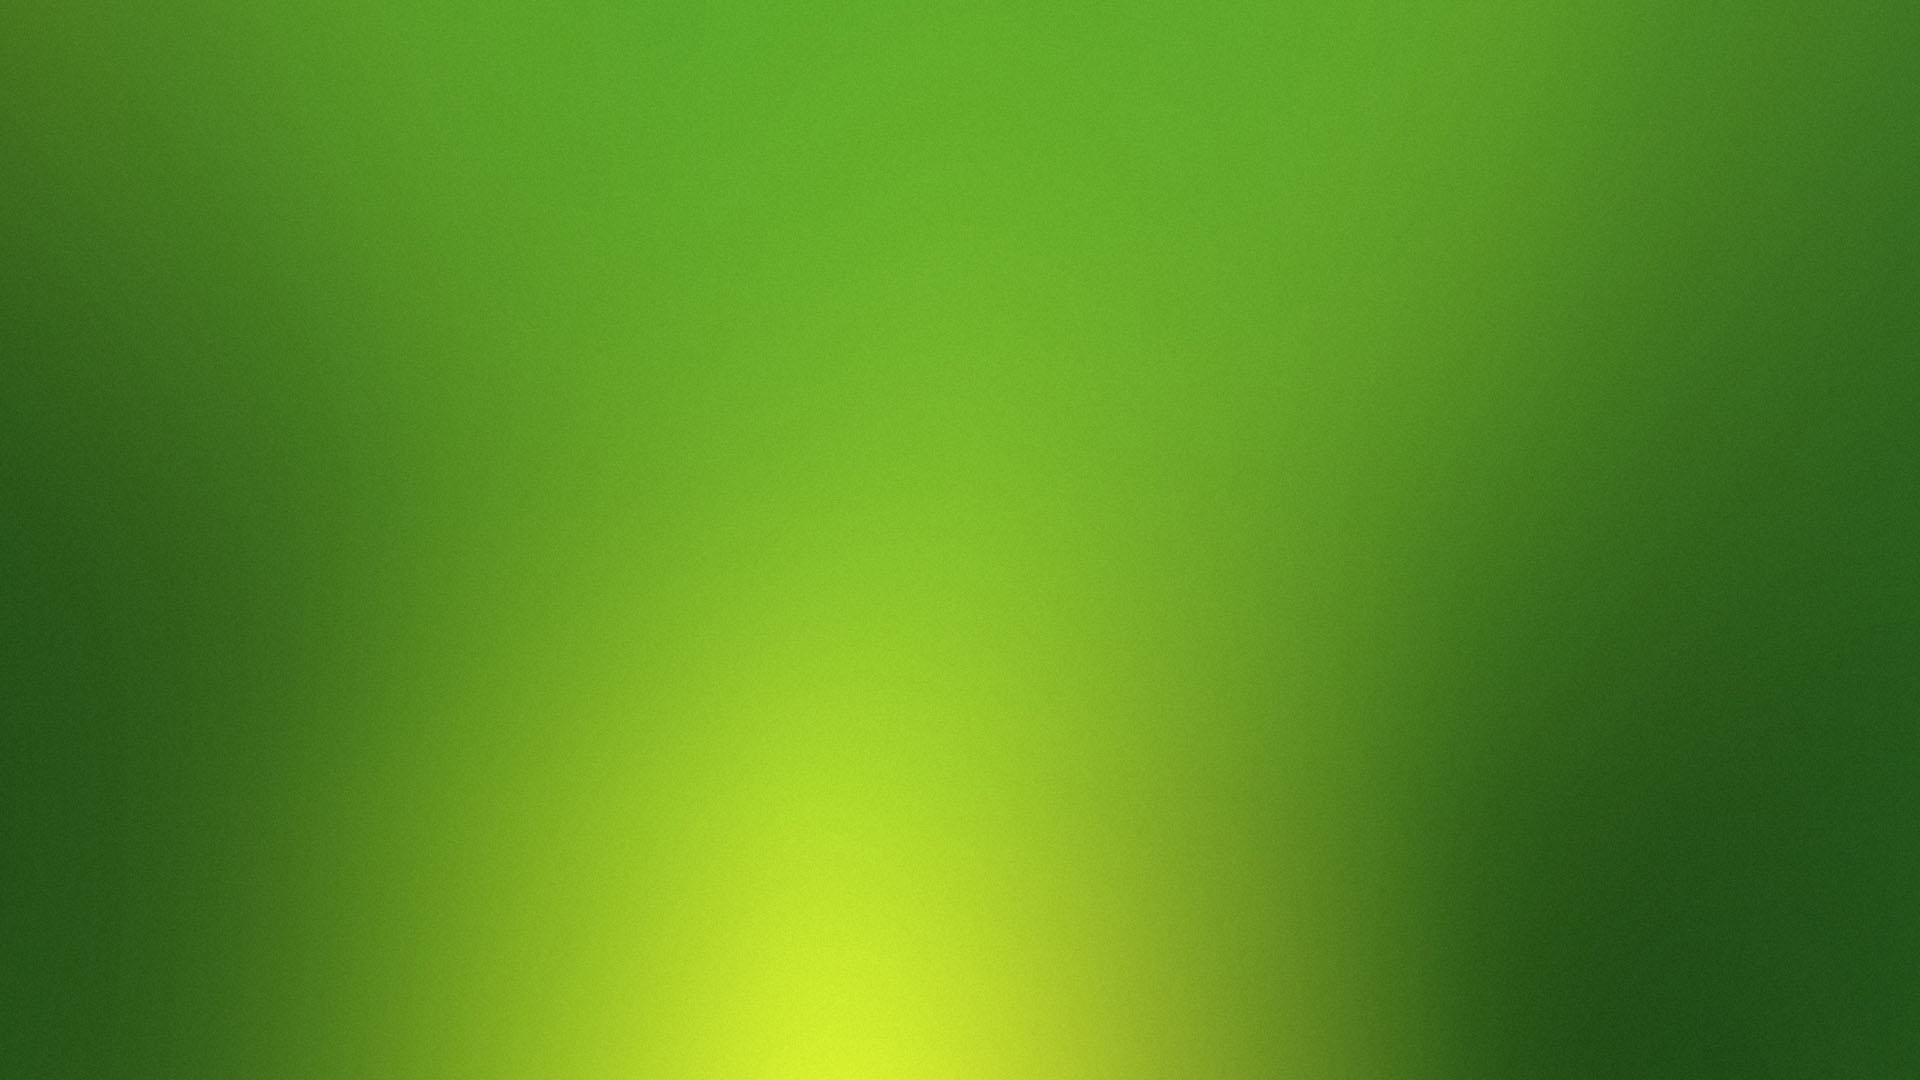 Plain Green Backgrounds Wallpaper 1920x1080 32872